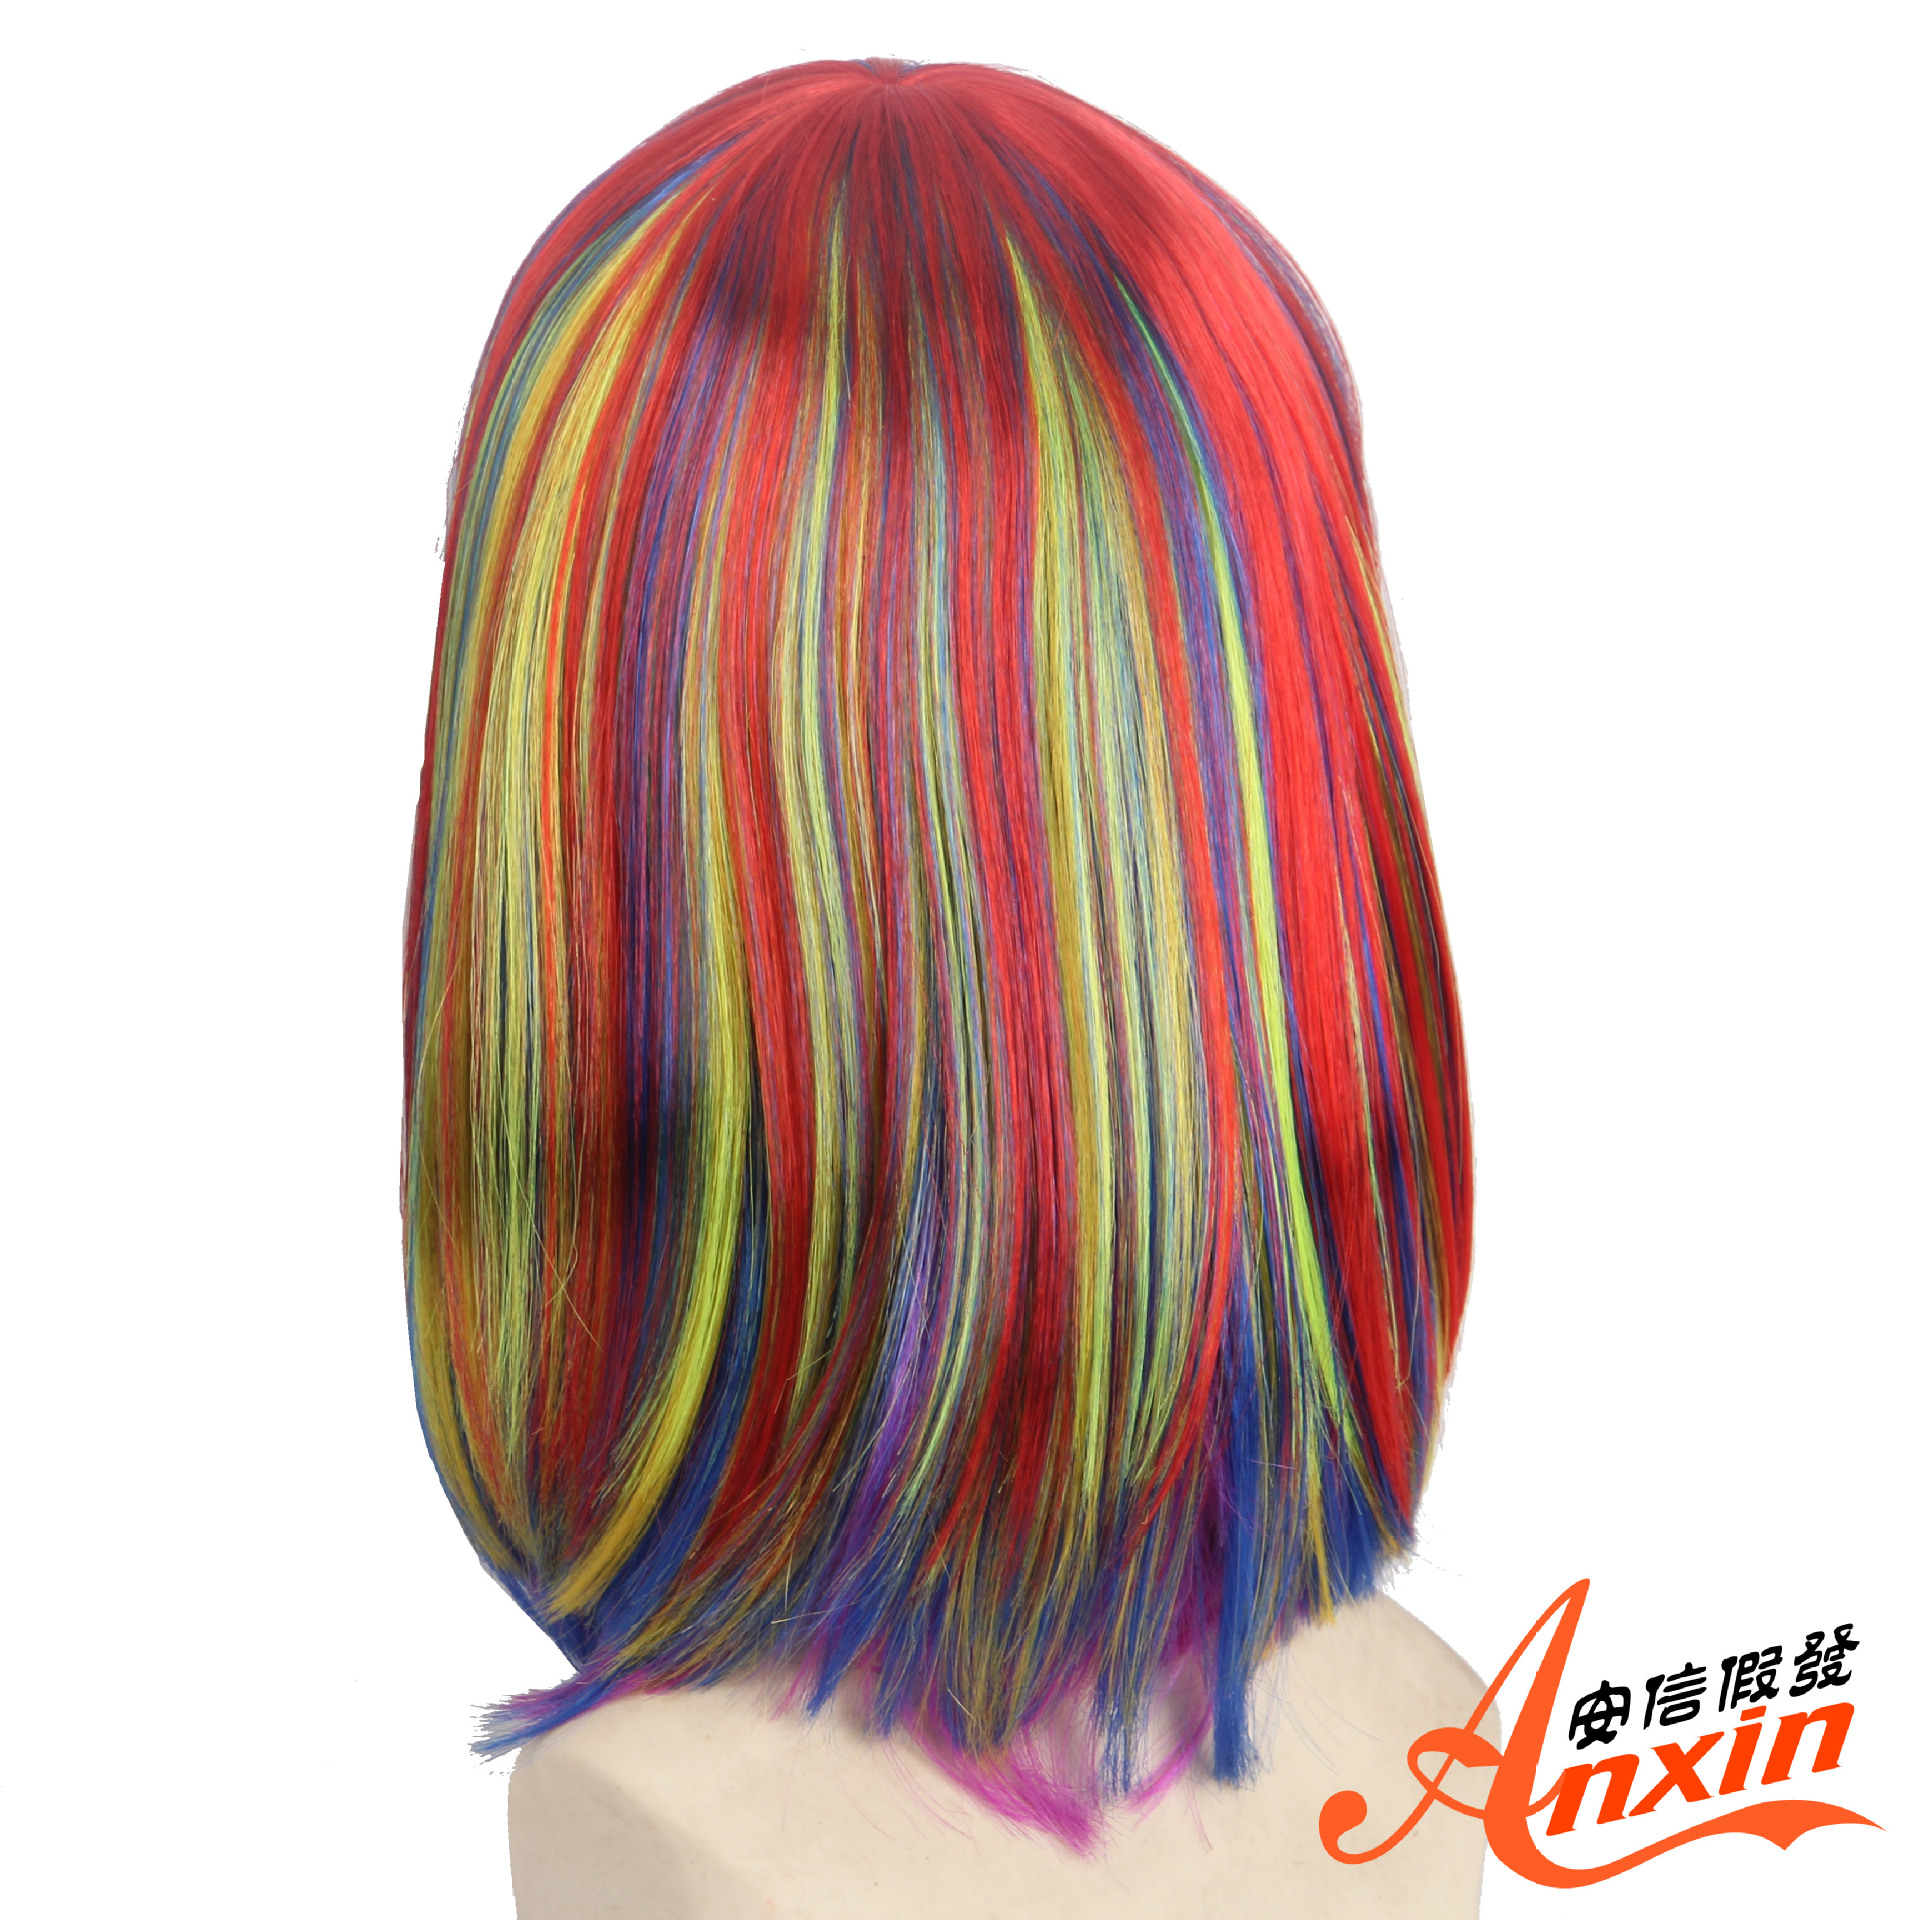 波波头假发女士欧美发型彩色齐刘海短发 本款女假发分彩色和单色-阿里巴巴